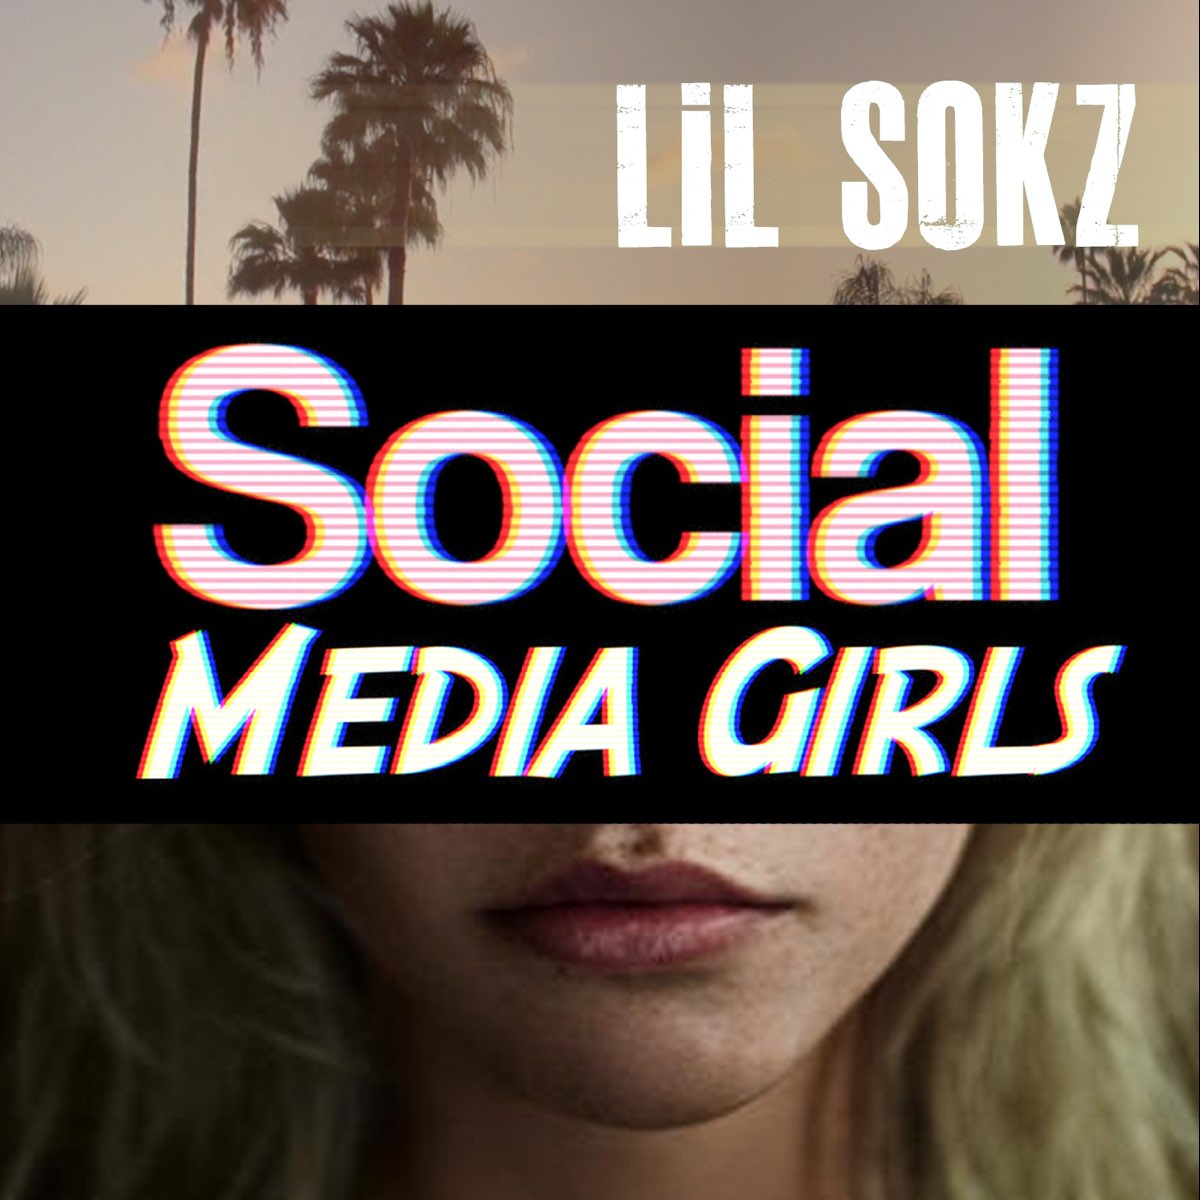 Socialmediagirls